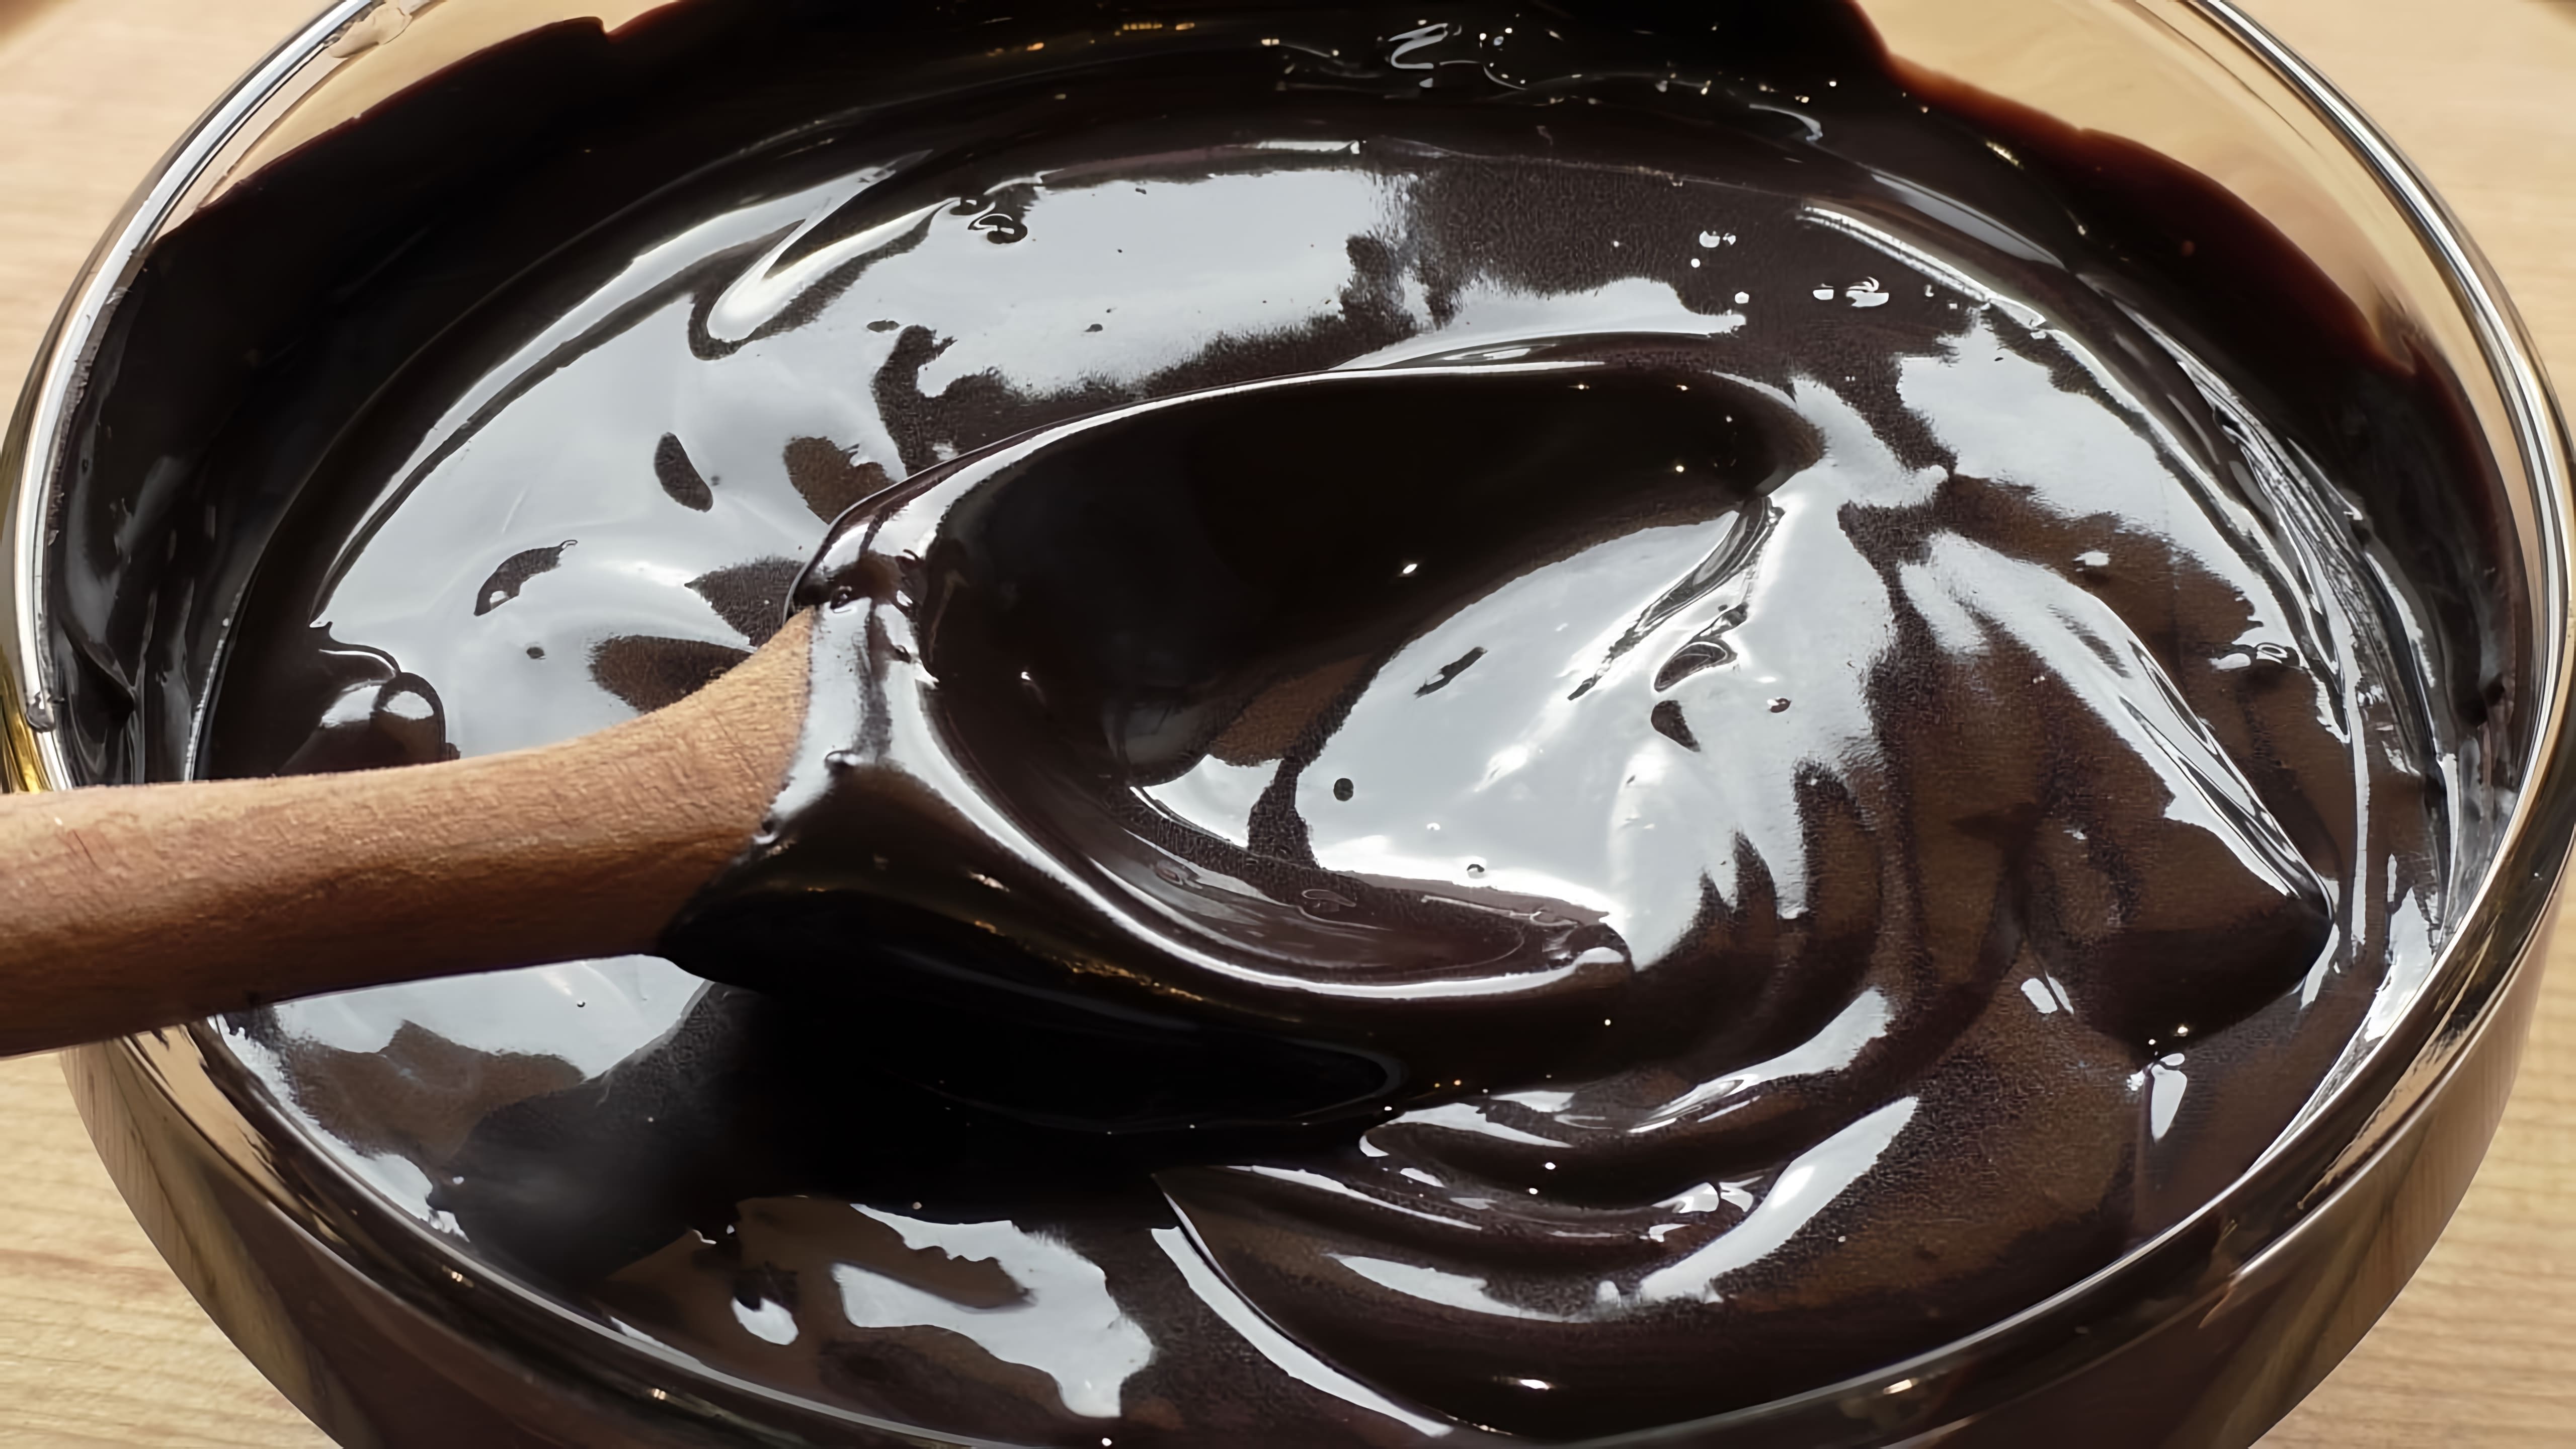 В этом видео-ролике Марьяна Рецепты делится своим рецептом приготовления самой вкусной шоколадной глазури из 4-х ингредиентов